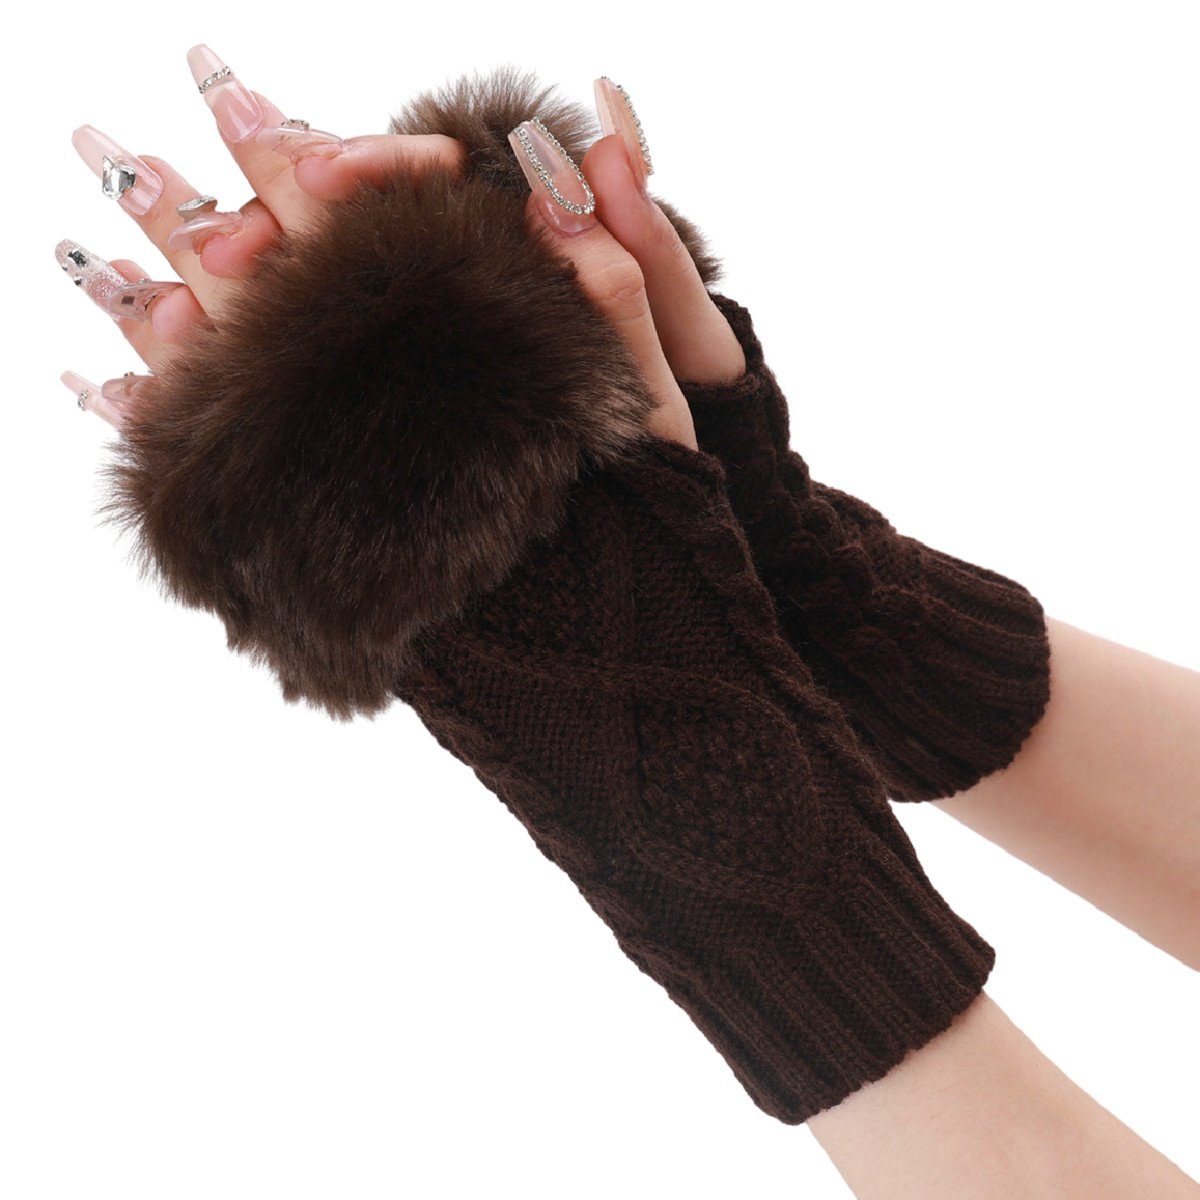 Jormftte Strickhandschuhe Damen Fingerlose Handschuhe,Winter Armstulpen Fingerlos Für frauen Kaffee